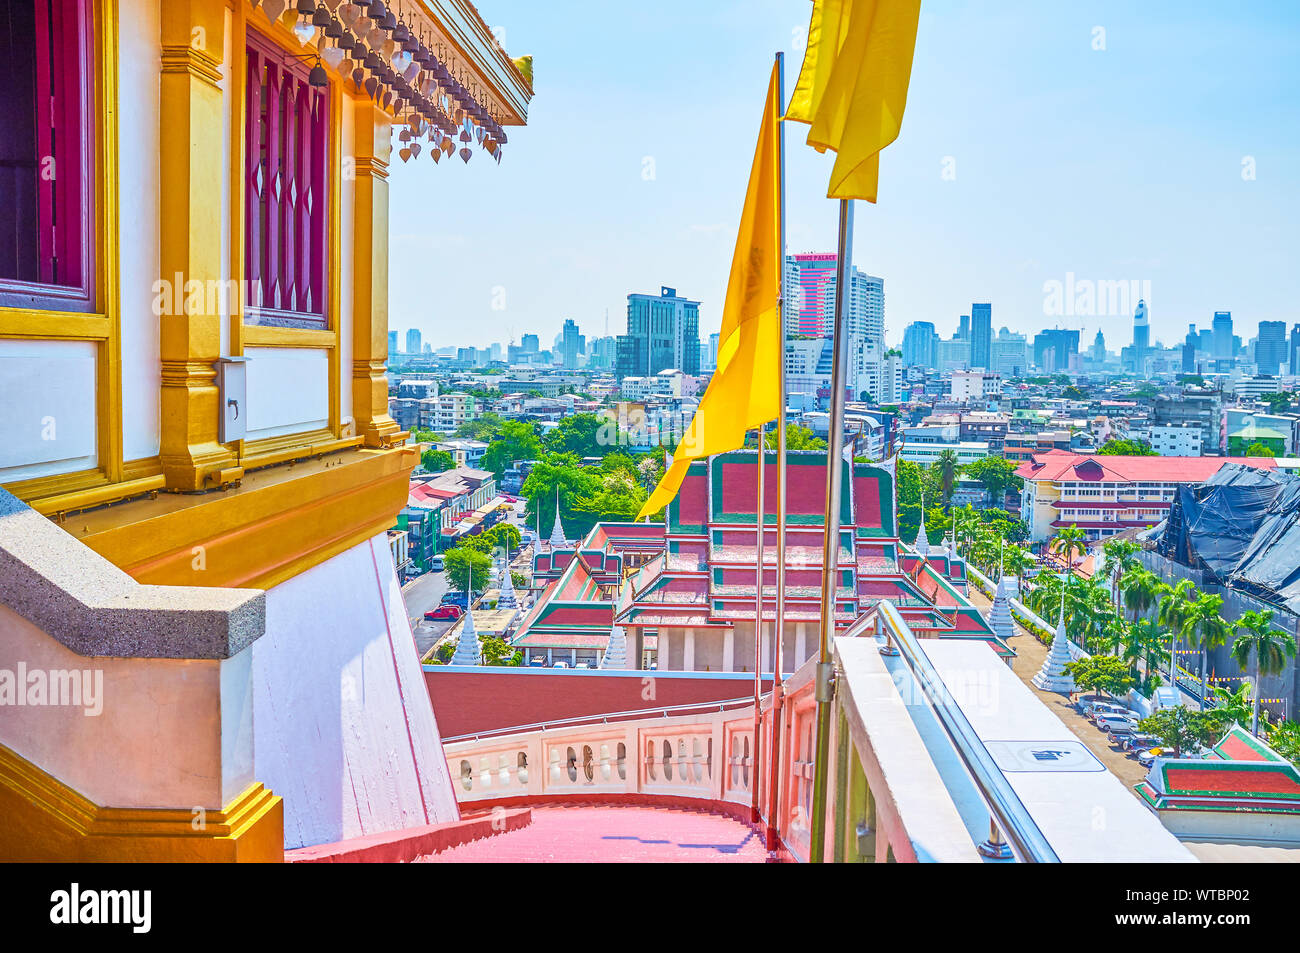 BANGKOK, THAÏLANDE - 24 avril 2019 : La dernière partie de l'ordre croissant à l'escalier d'Or (Wat Saket) temple Mount Royal jaune décoré de drapeaux Banque D'Images